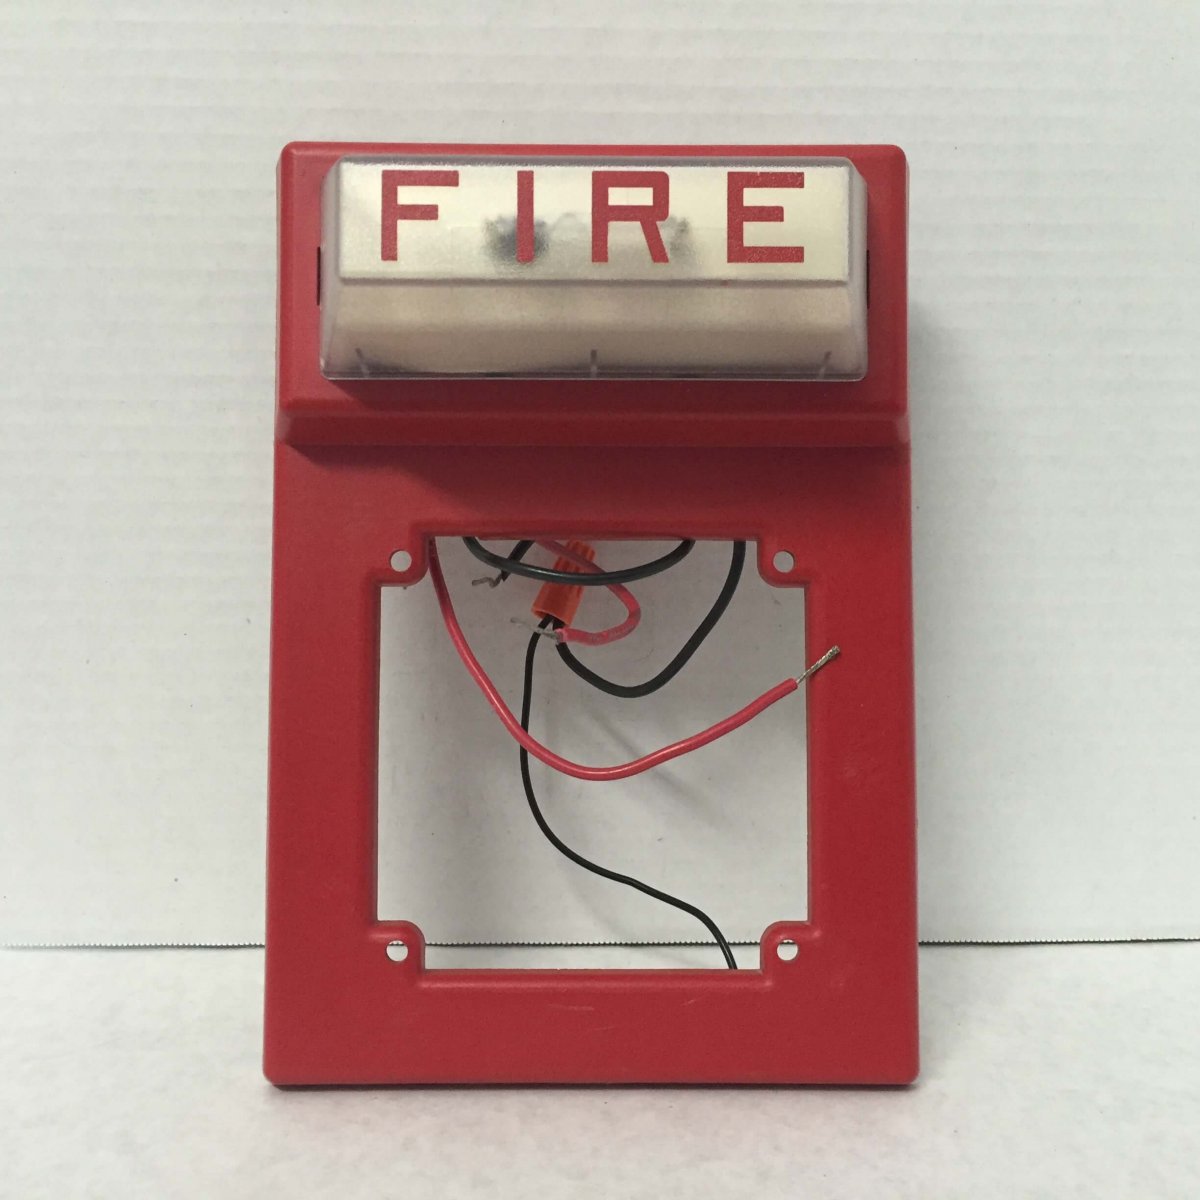 Simplex 4903-9101 - FireAlarms.tv - jjinc24/U8oL0's Fire Alarm ...